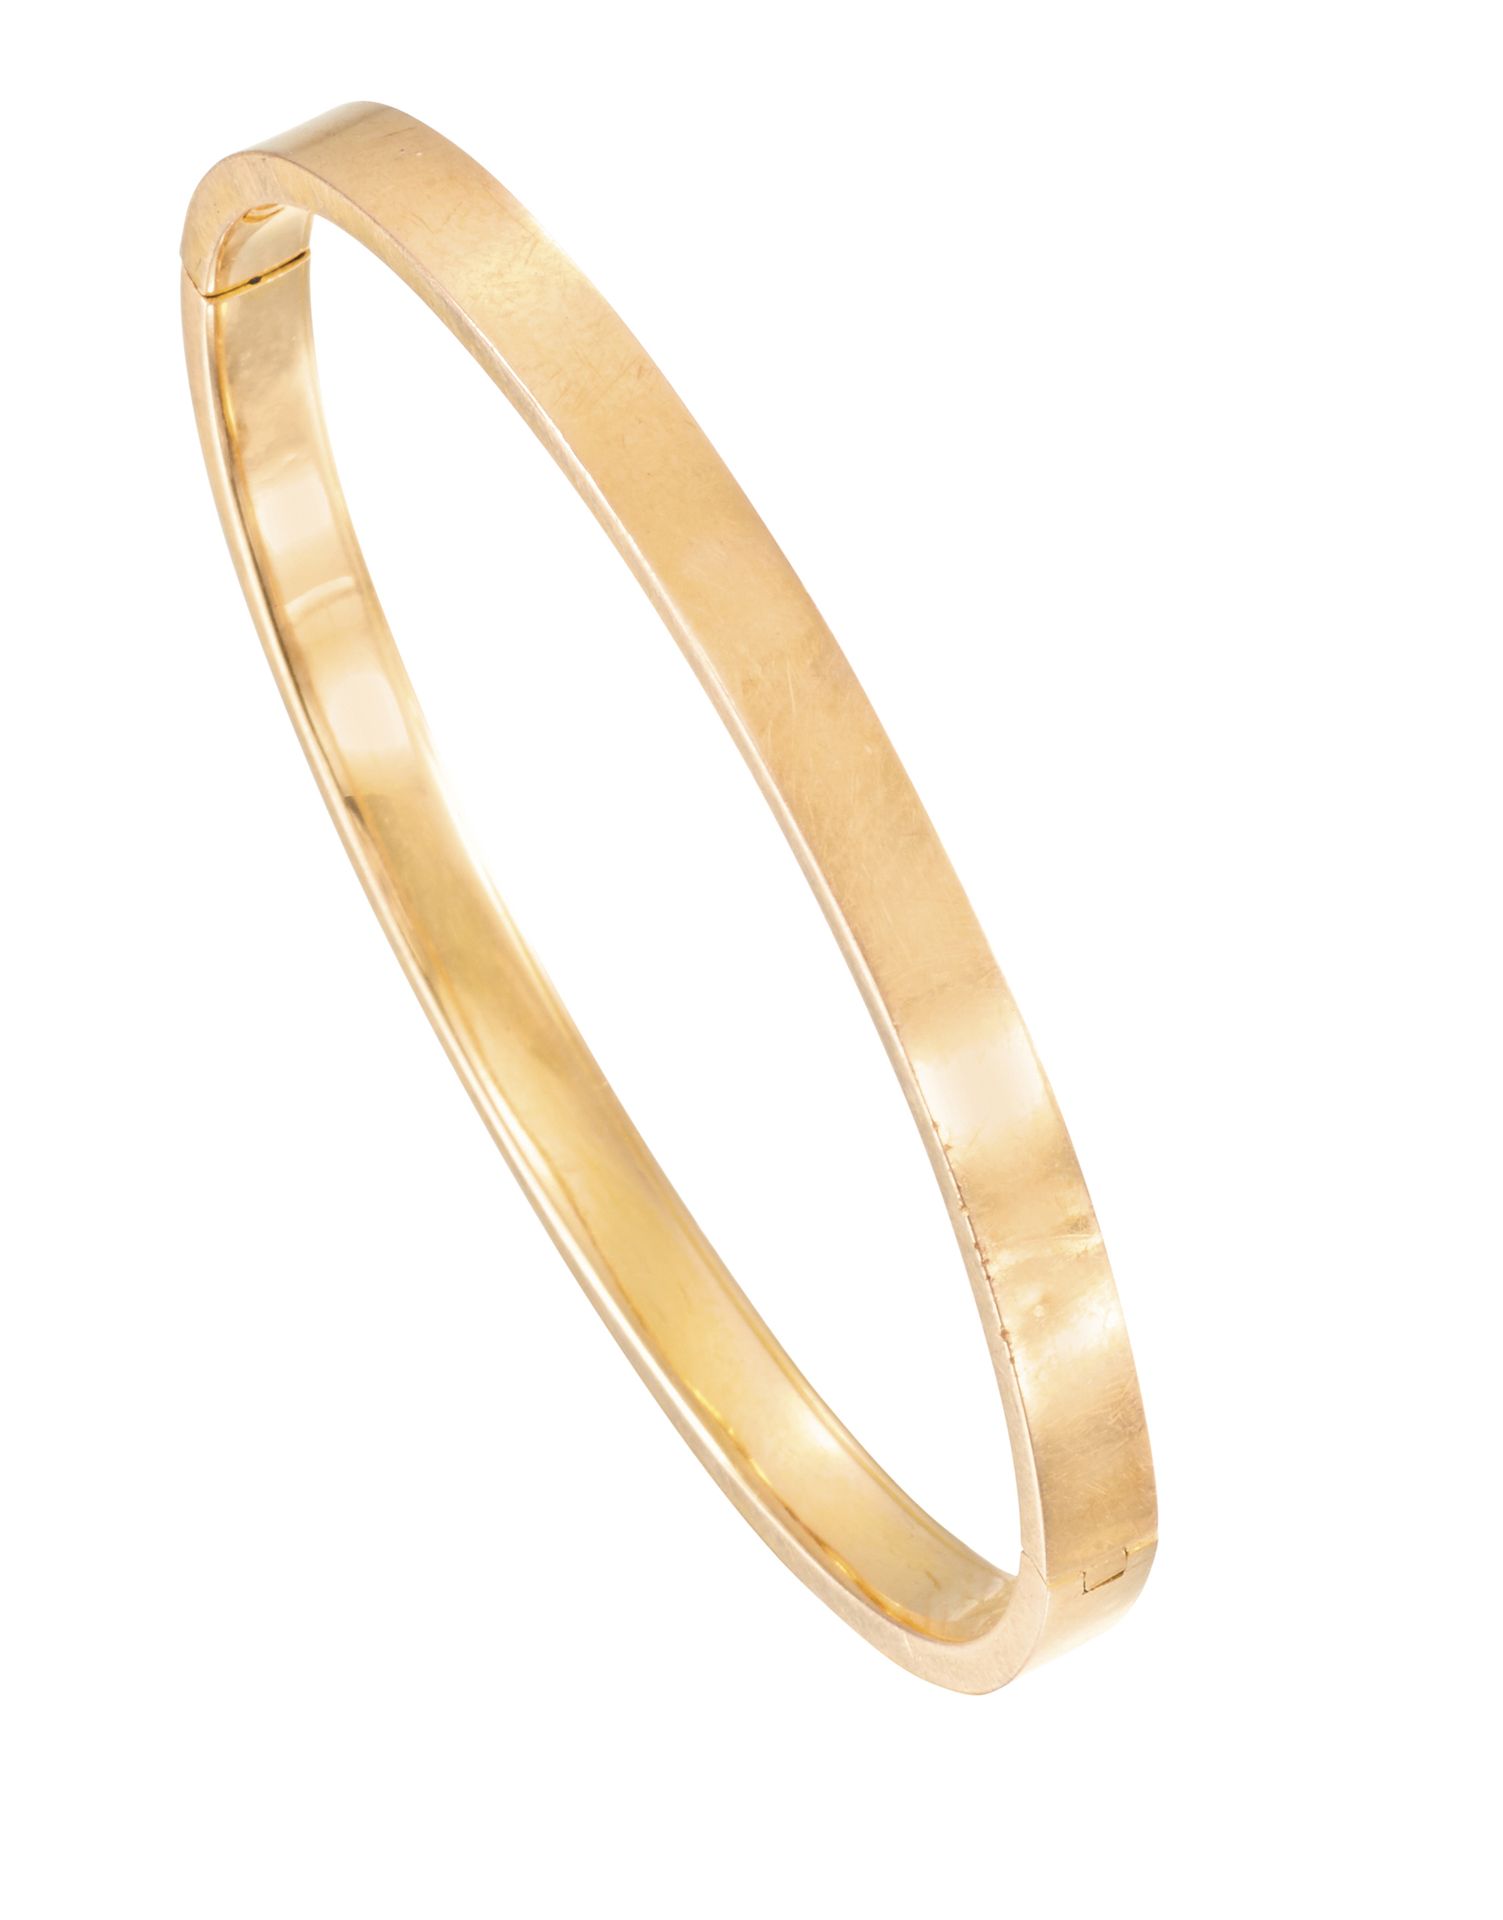 Bracelet en or jaune ovalisé à ouverture latérale (1TC)
Ø : 4,8 cm
Pb : 5,14 g (&hellip;